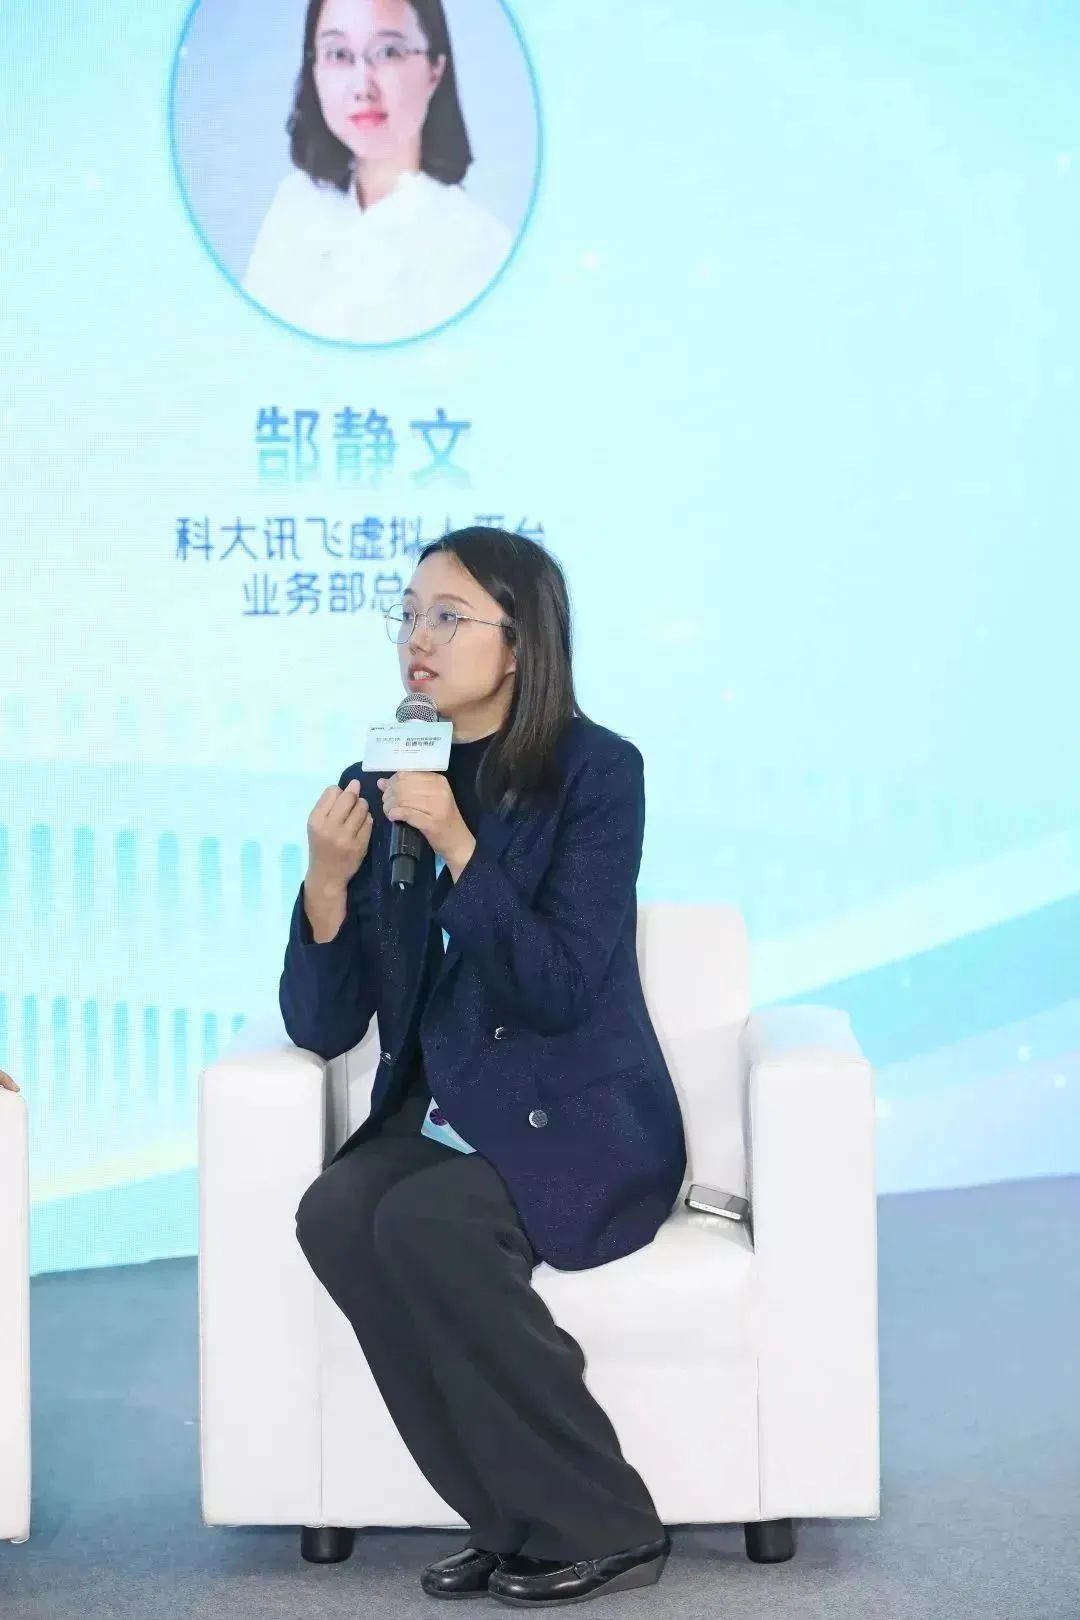 中广联合会有声阅读委员会举办“有声有势——AI时代有声阅读的机遇与挑战”主题活动